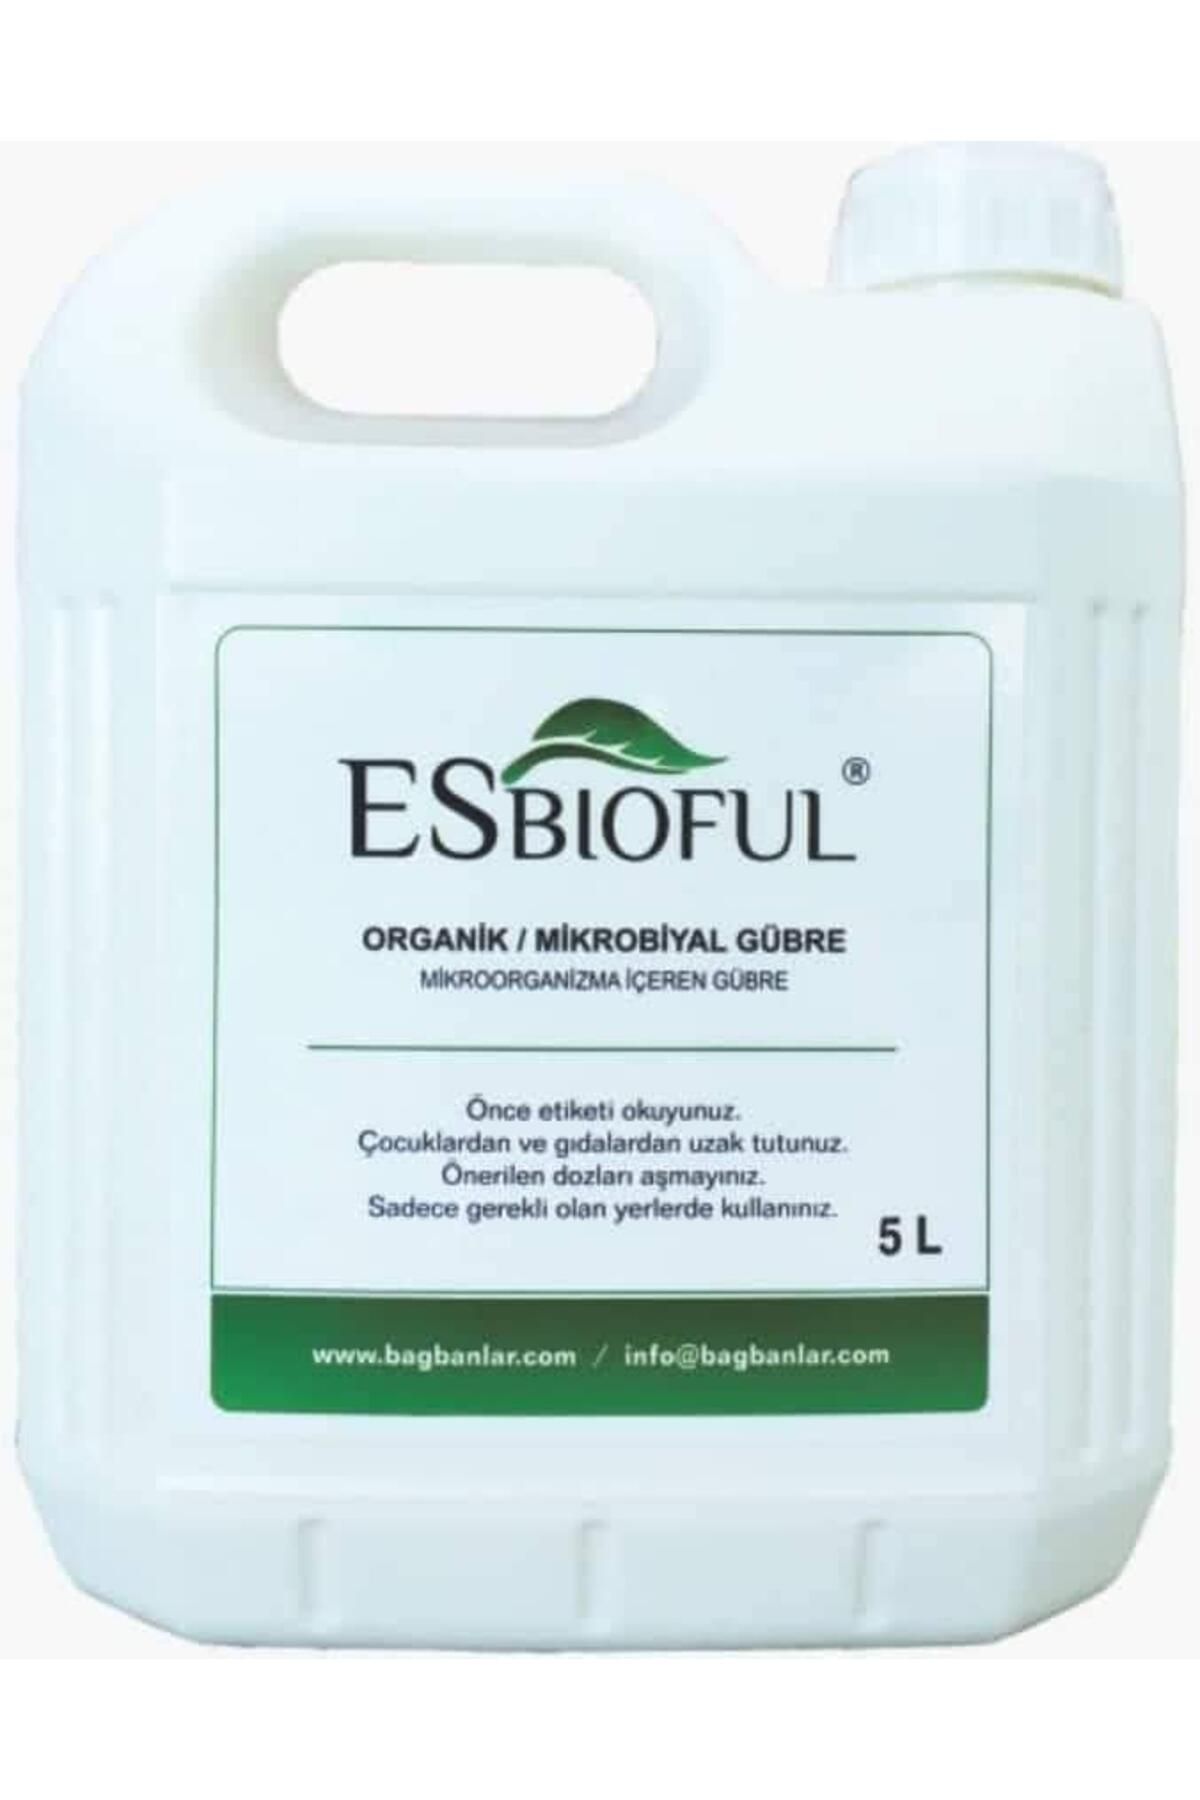 ESbioful Organik sıvı gübre 5 L